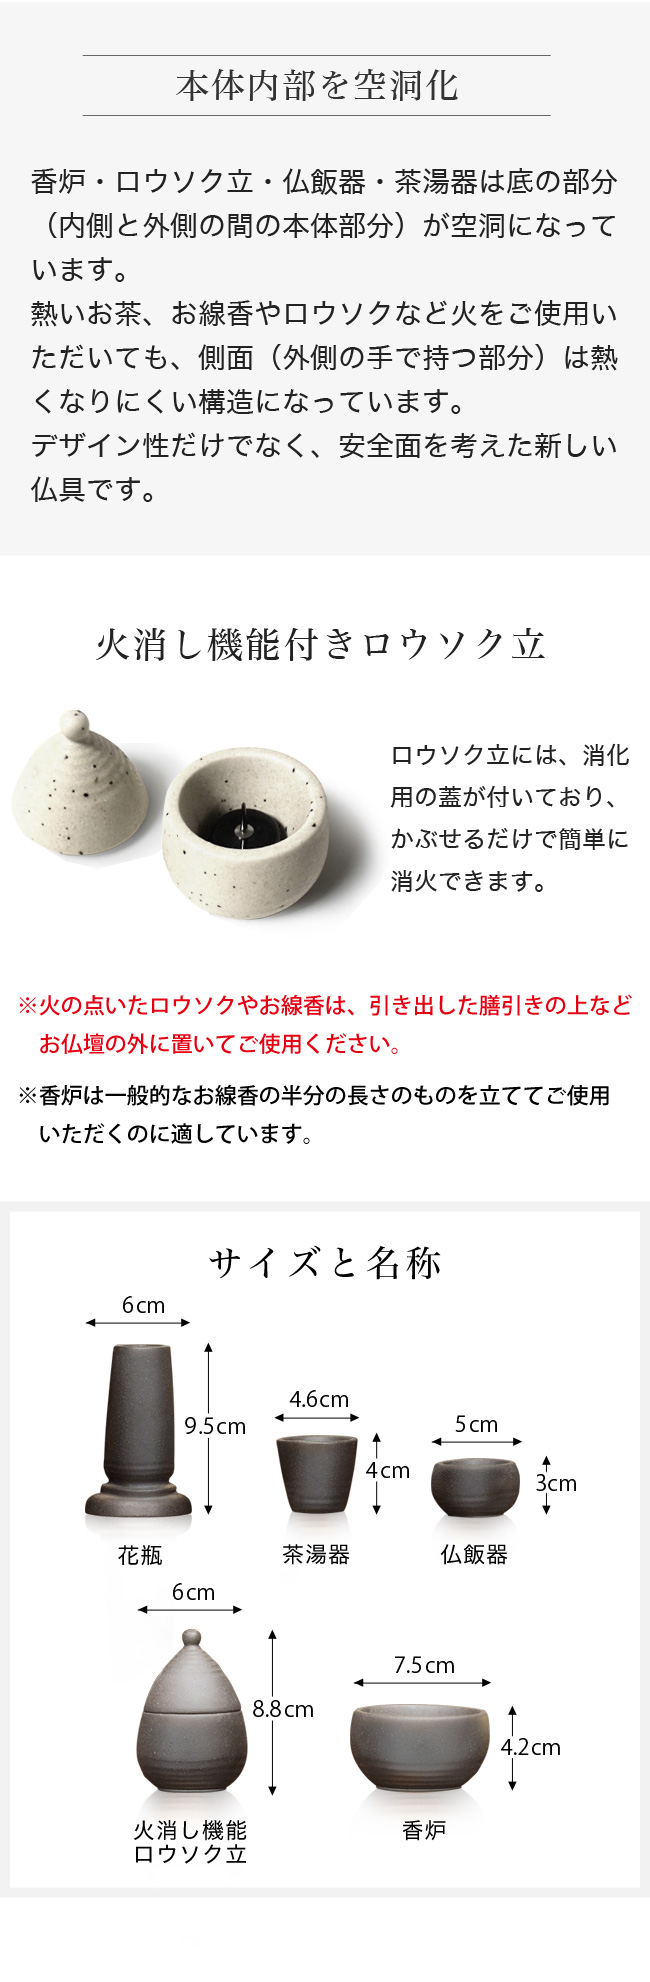 陶製モダン仏具 備前吹き 白みかげ 5点セット 全2色 陶器製 美濃焼 日本製 白ミカゲ